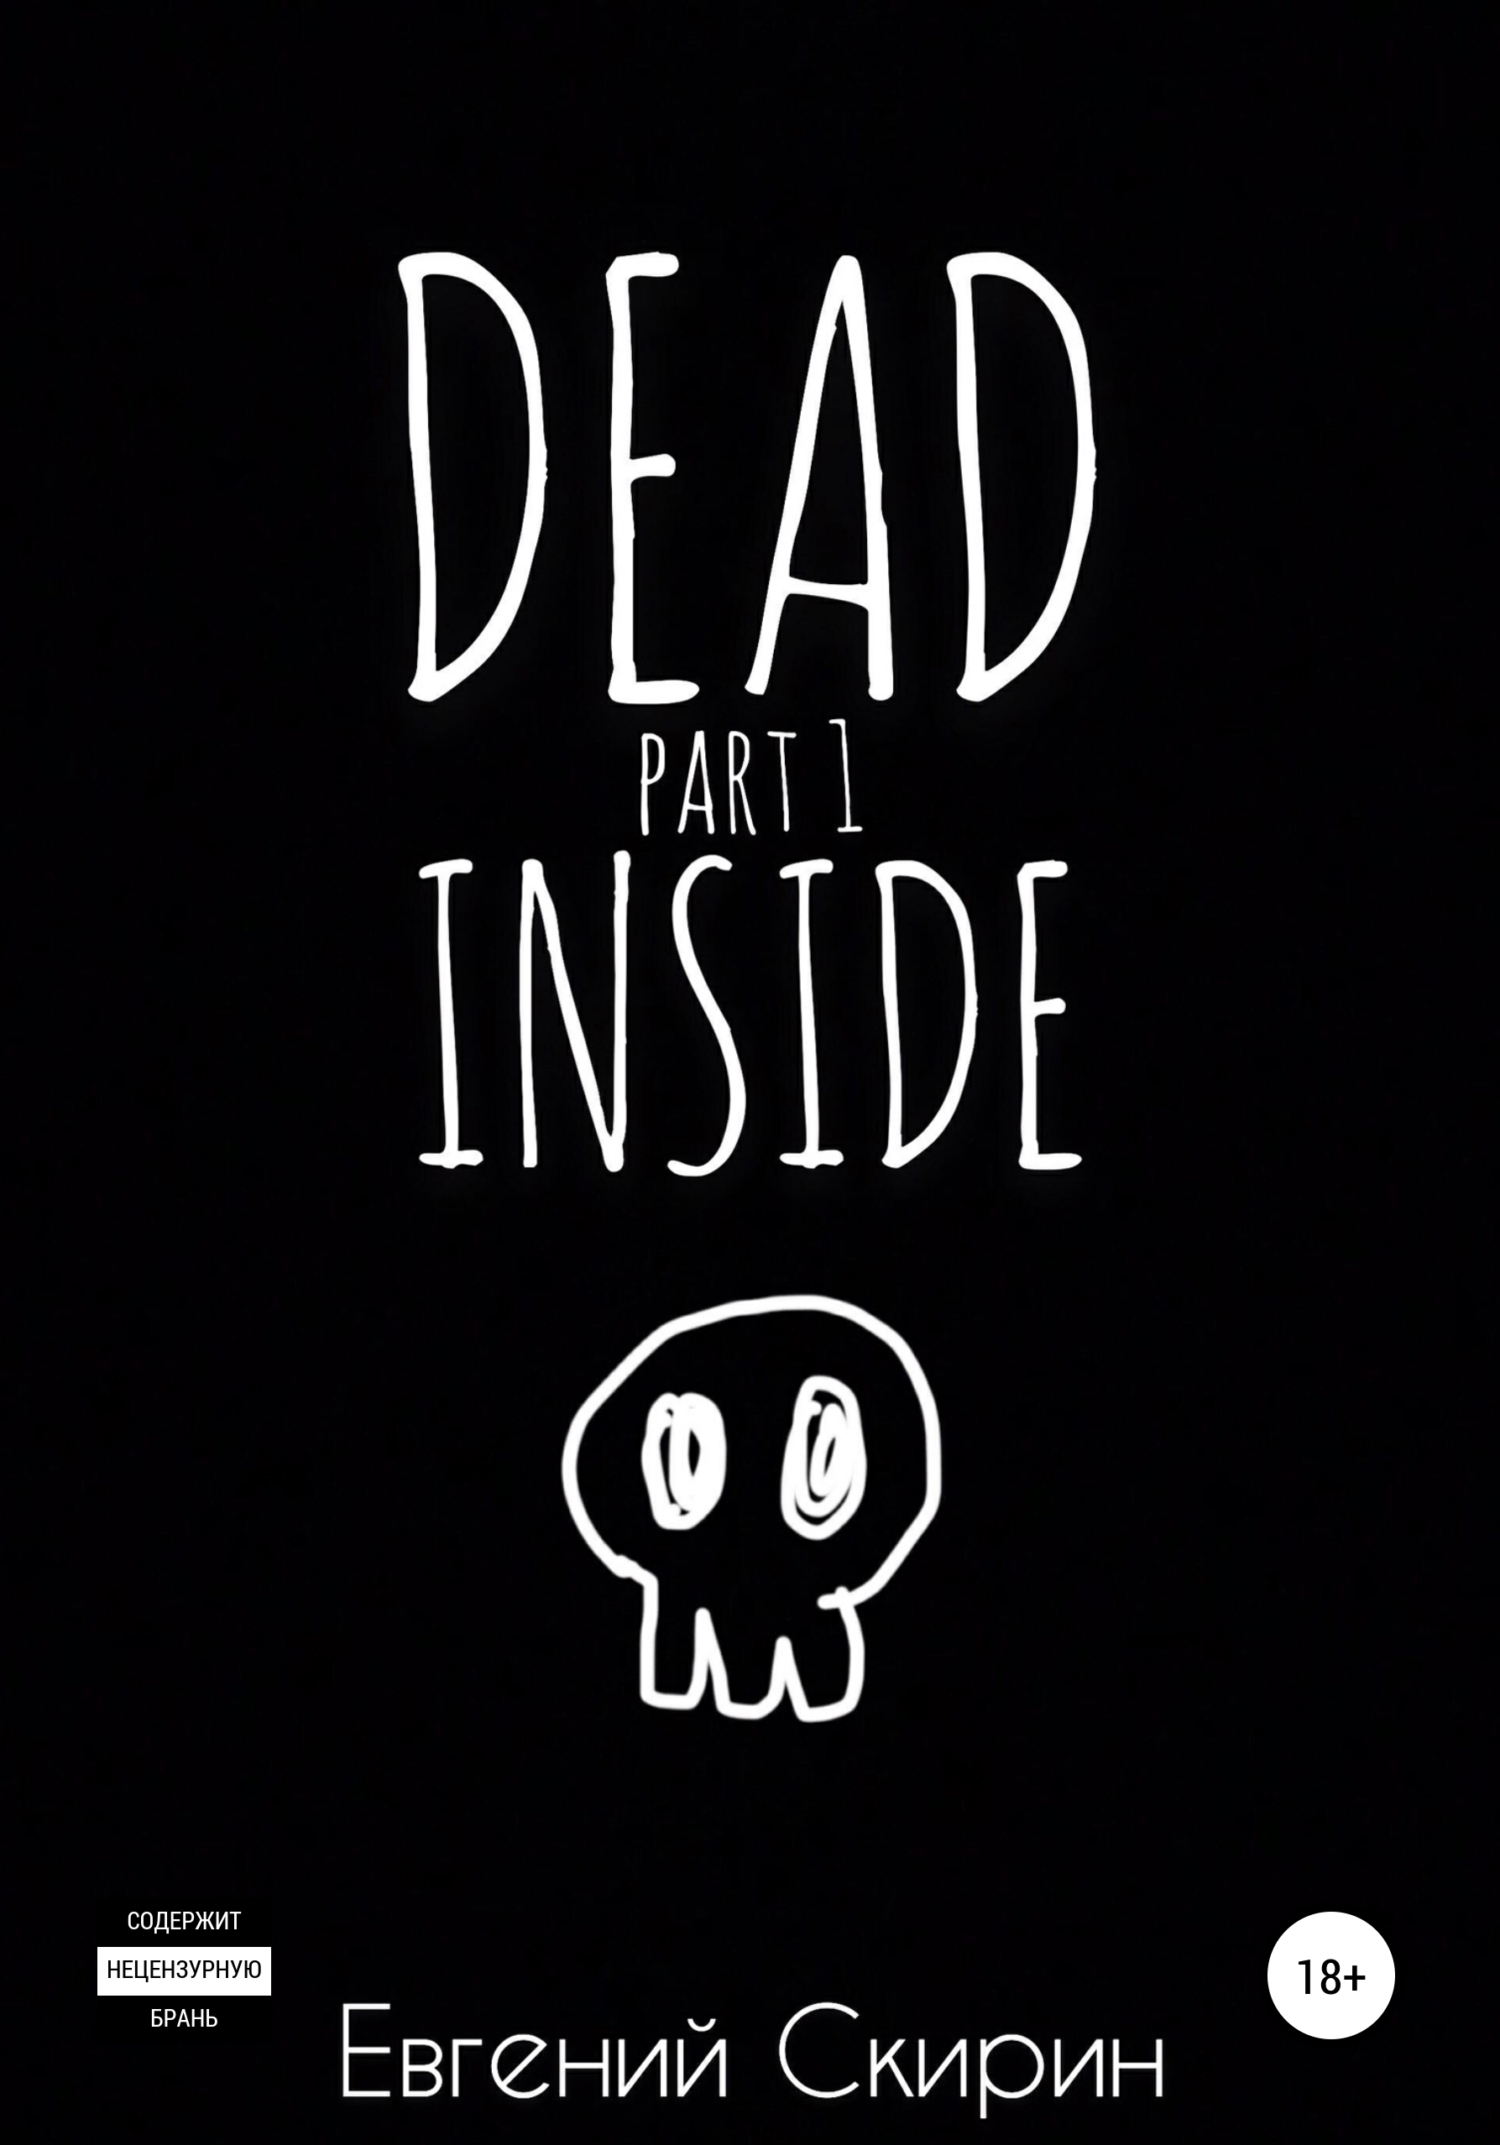 Dead Inside. Part 1